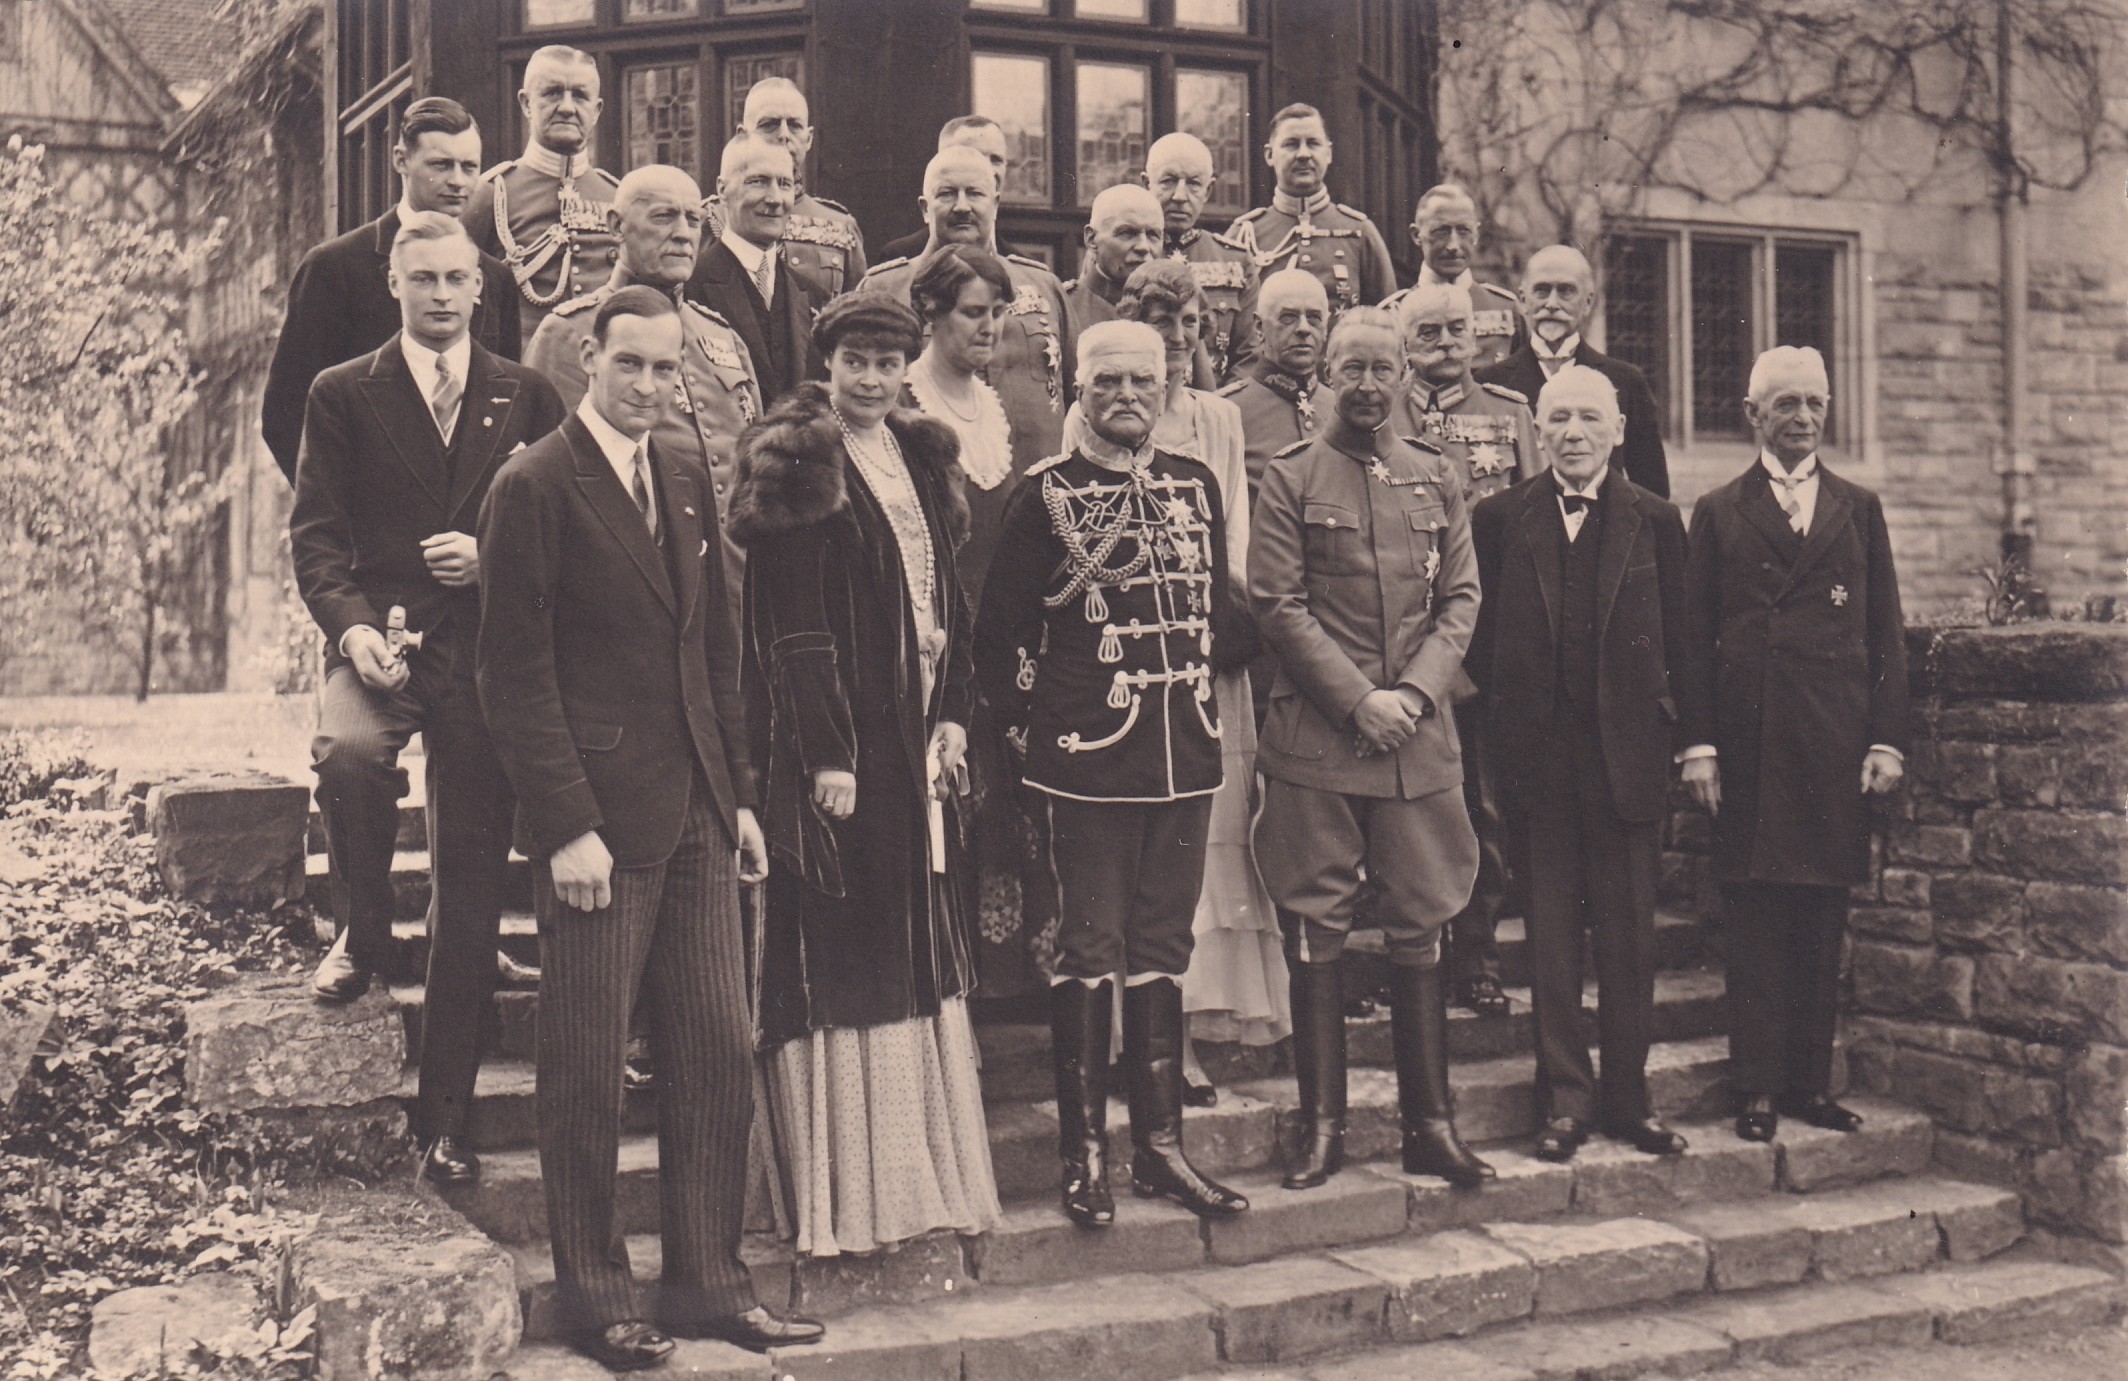 Bildpostkarte mit Gruppenfoto am 50. Geburtstag des ehemaligen Kronprinzen Wilhelm vor Schloss Cecilienhof, 6. Mai 1932 (Schloß Wernigerode GmbH RR-F)